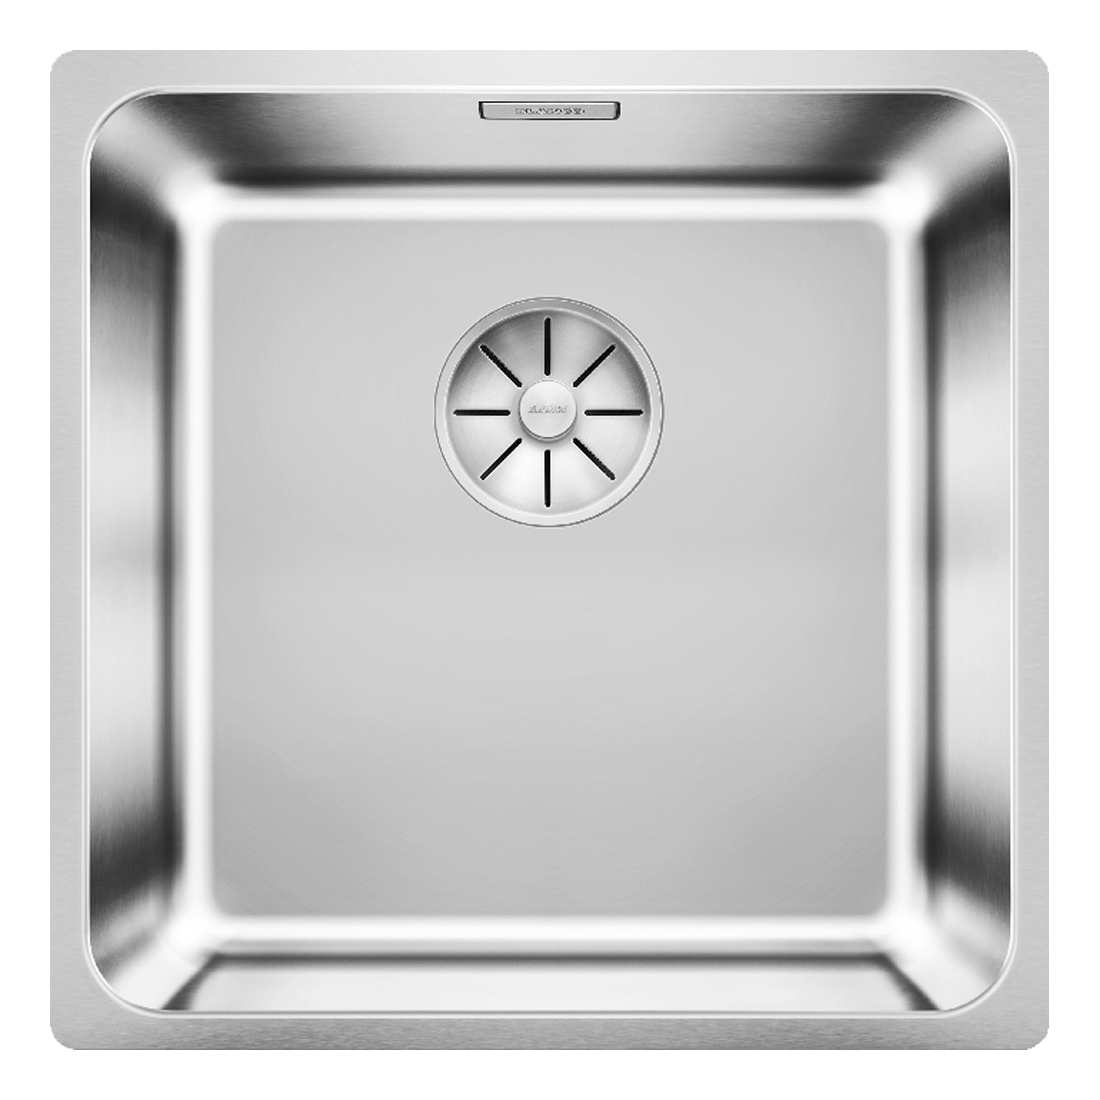 Кухонная мойка Blanco Solis 400-U полированная сталь кухонная мойка franke 101 0689 948 нержавеющая сталь